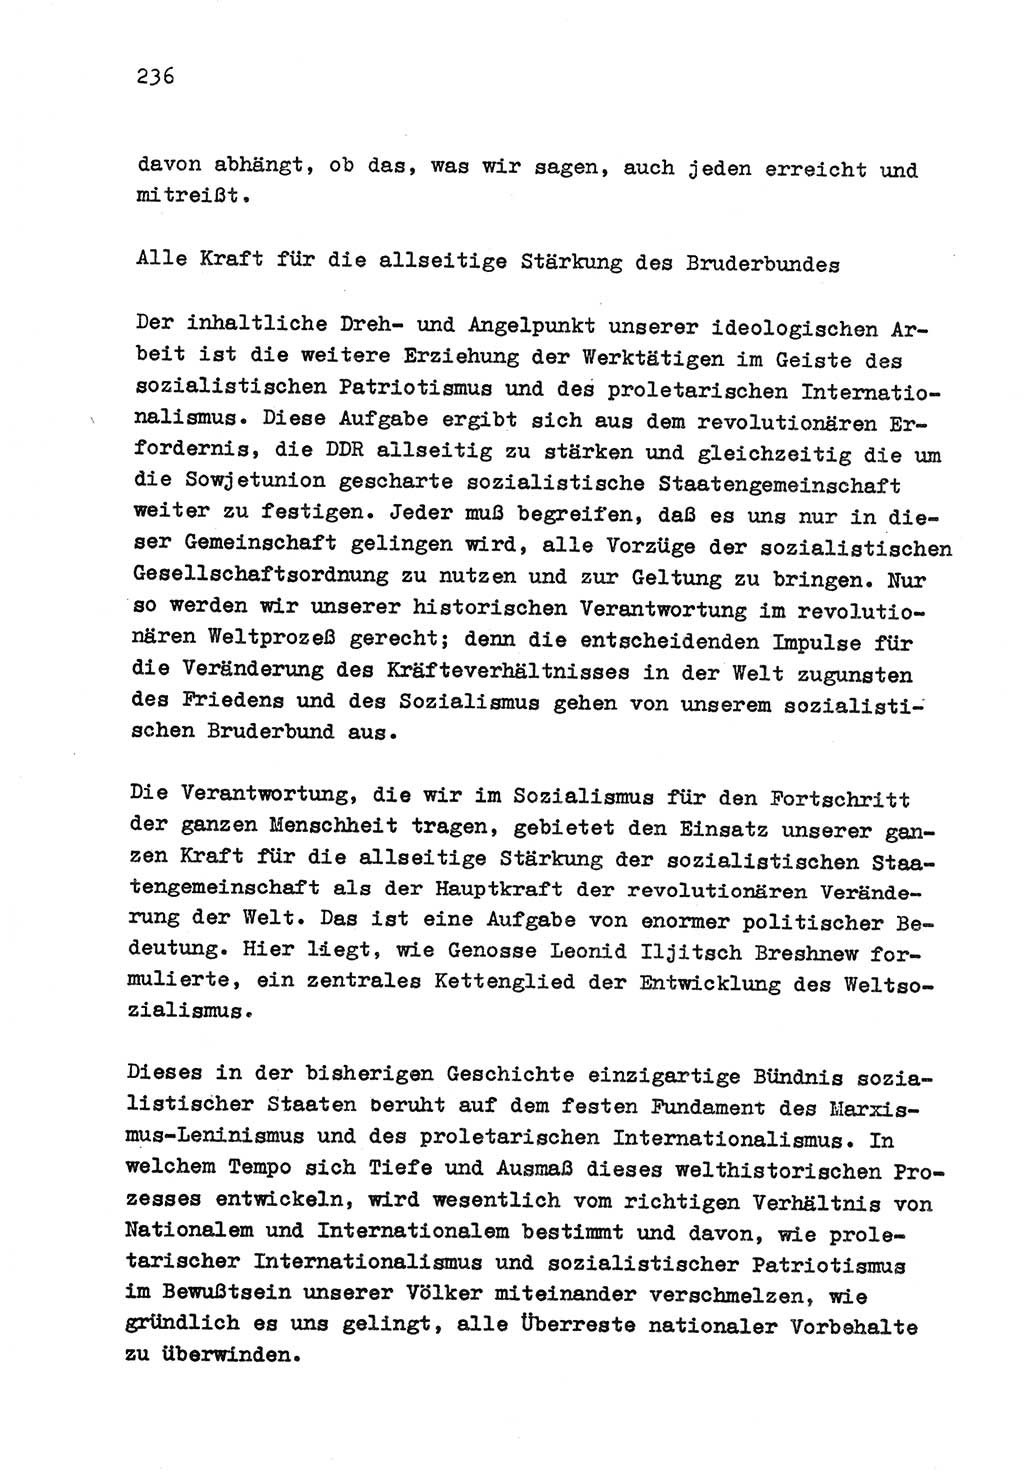 Zu Fragen der Parteiarbeit [Sozialistische Einheitspartei Deutschlands (SED) Deutsche Demokratische Republik (DDR)] 1979, Seite 236 (Fr. PA SED DDR 1979, S. 236)